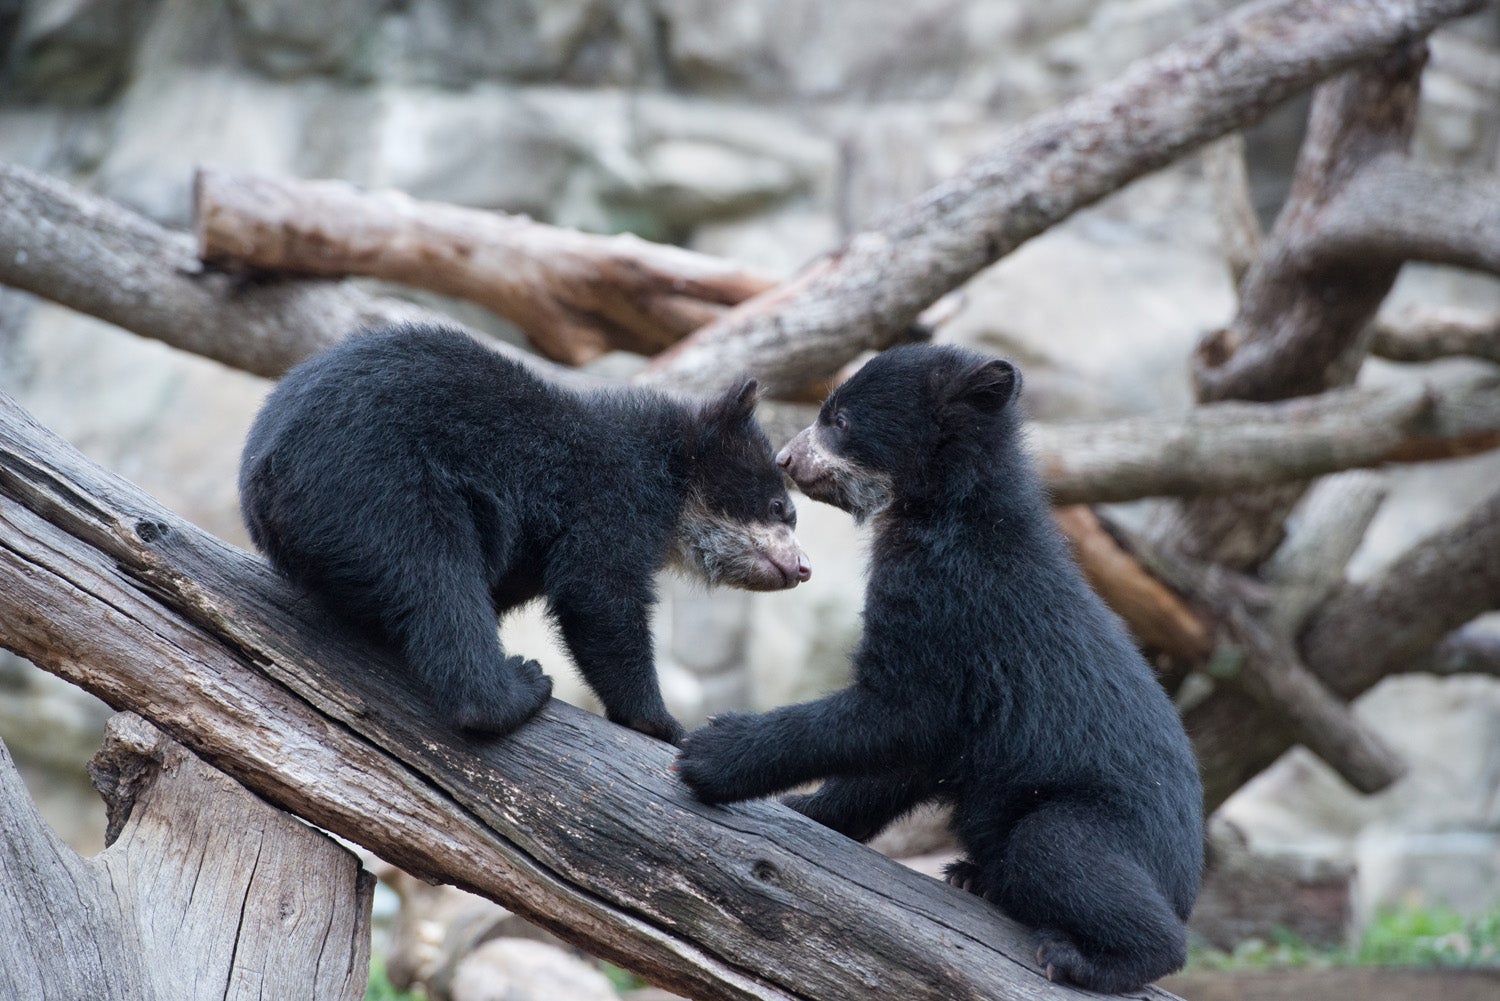 Andean bear cubs play on log